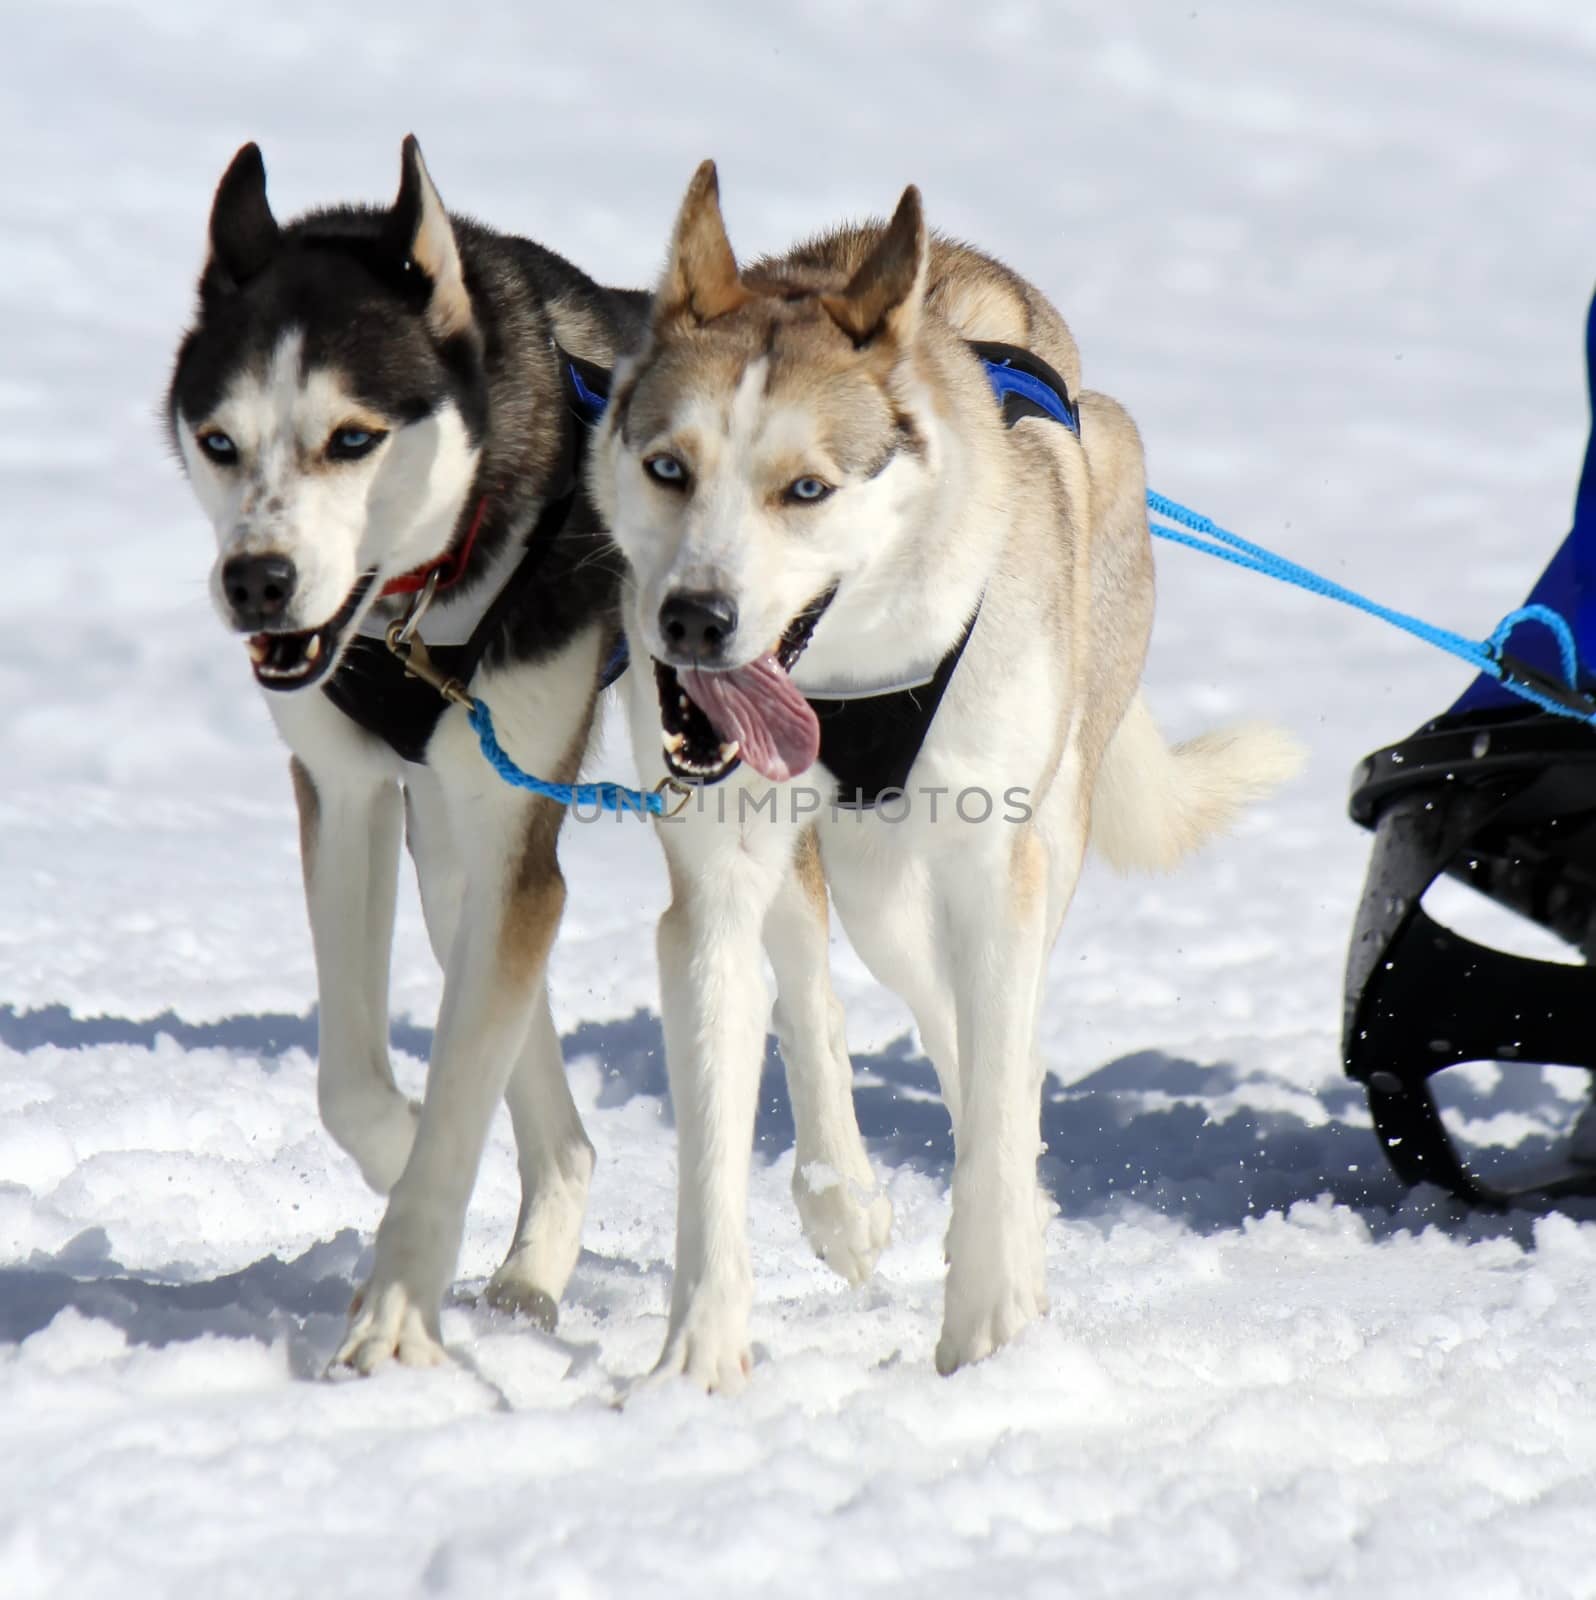 A husky sled dog team at work by Elenaphotos21